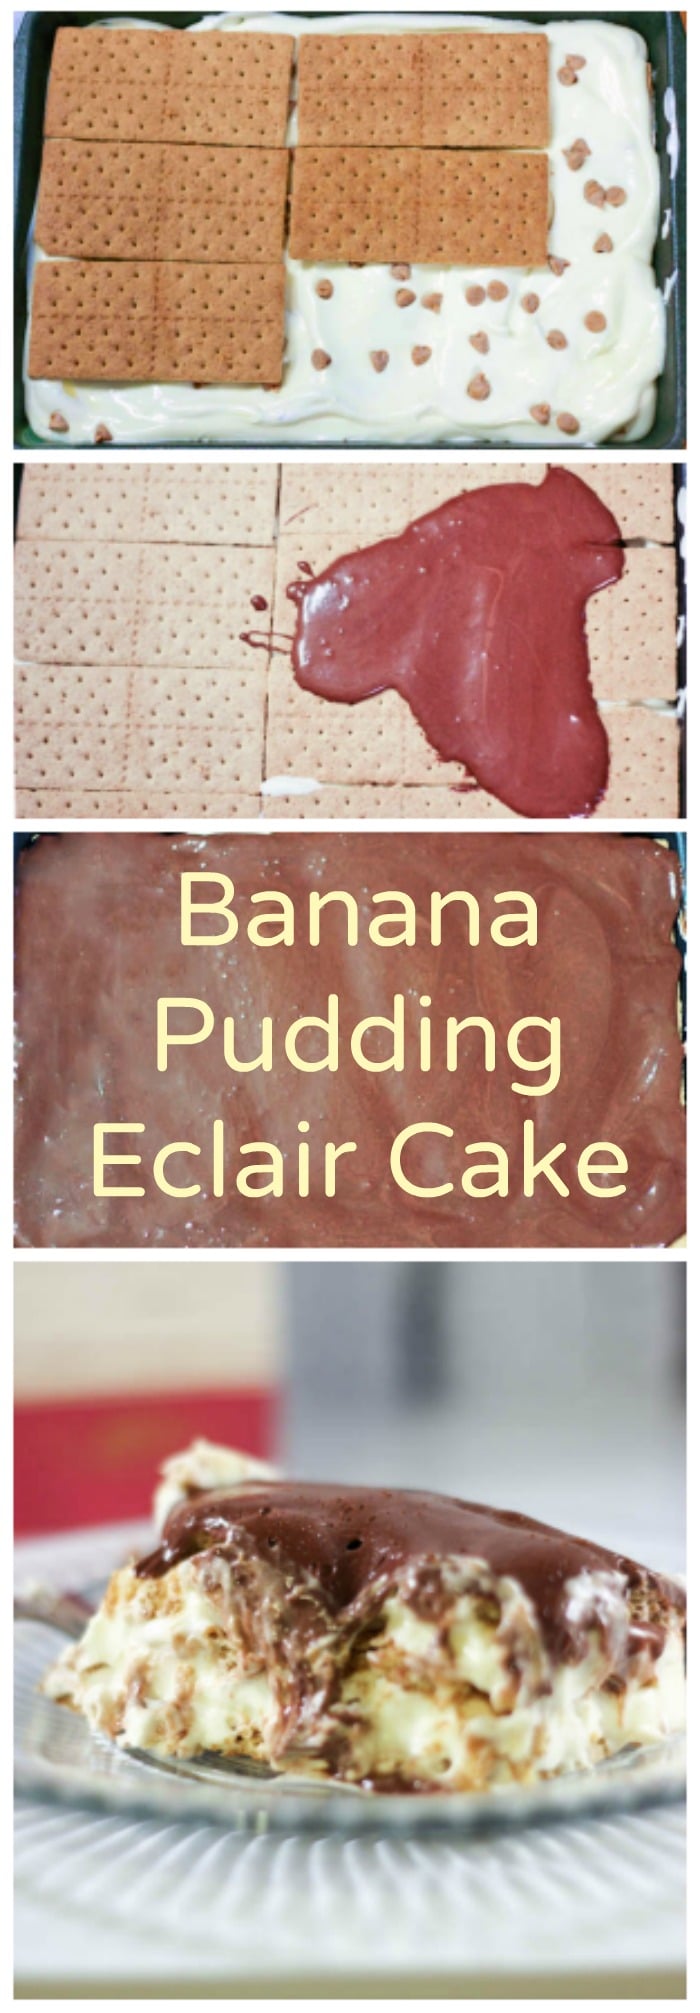 Banana Pudding Eclair Cake - No Bake Easy Dessert